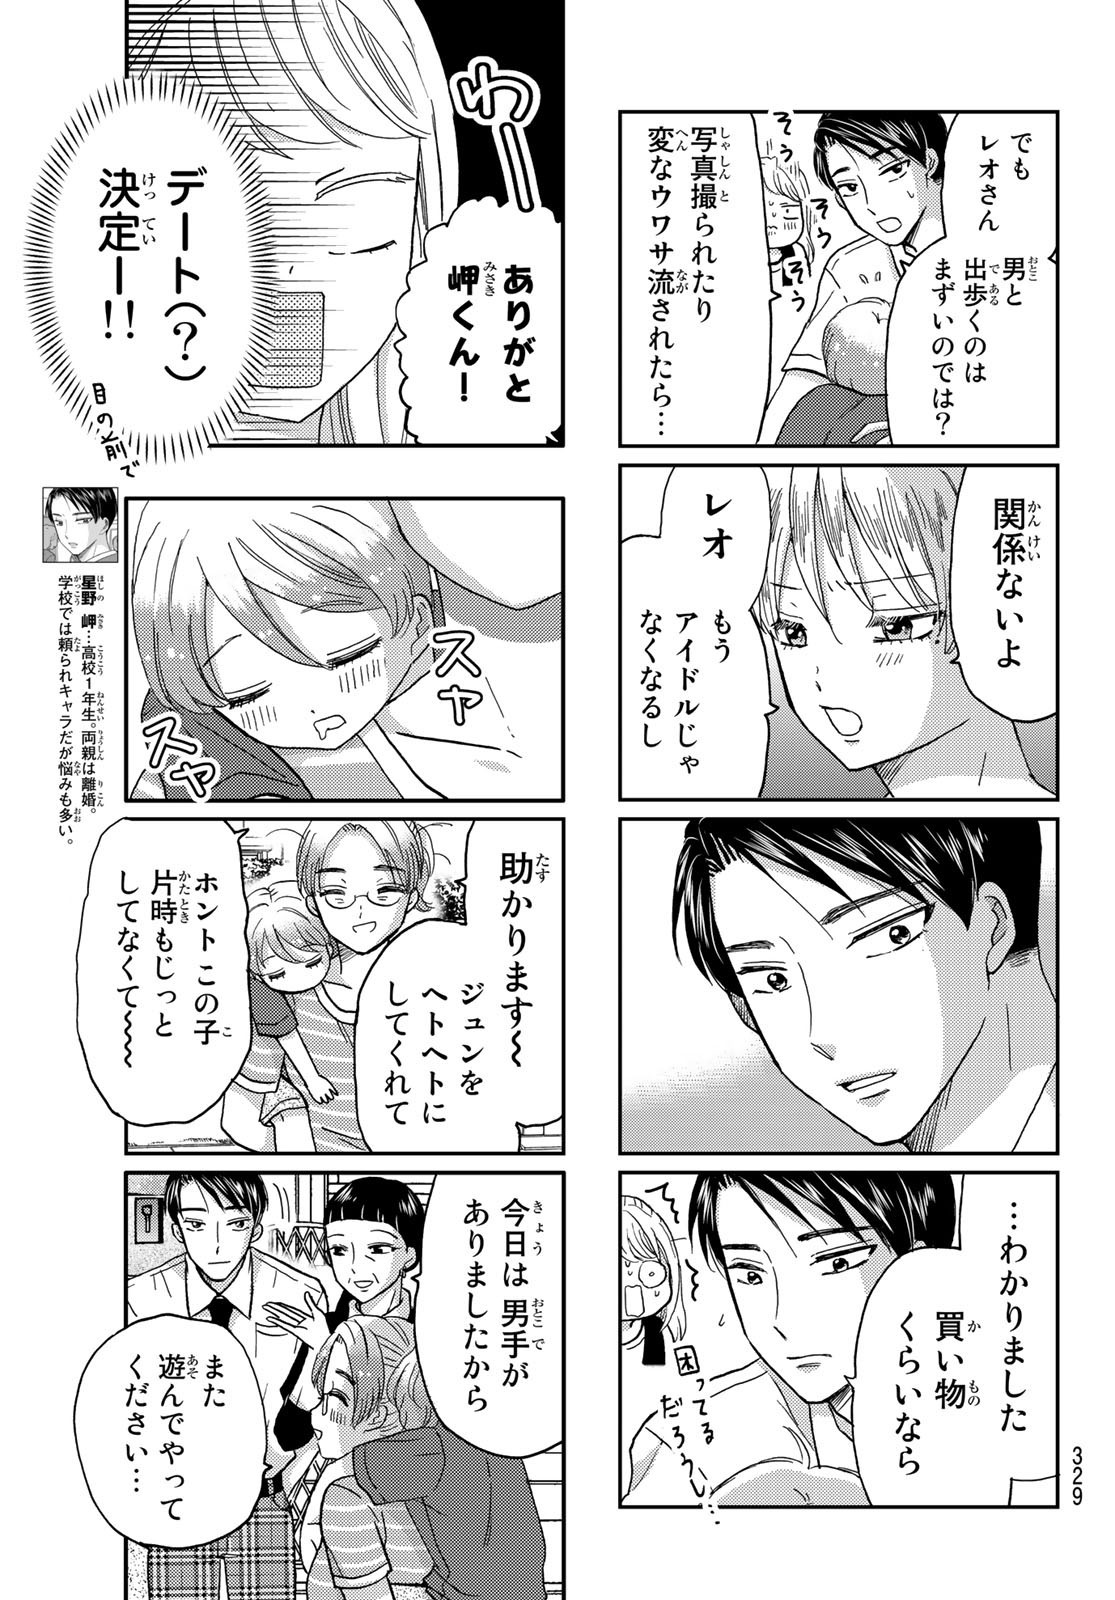 Hinata-san, Hoshino desu. - Chapter 039 - Page 3